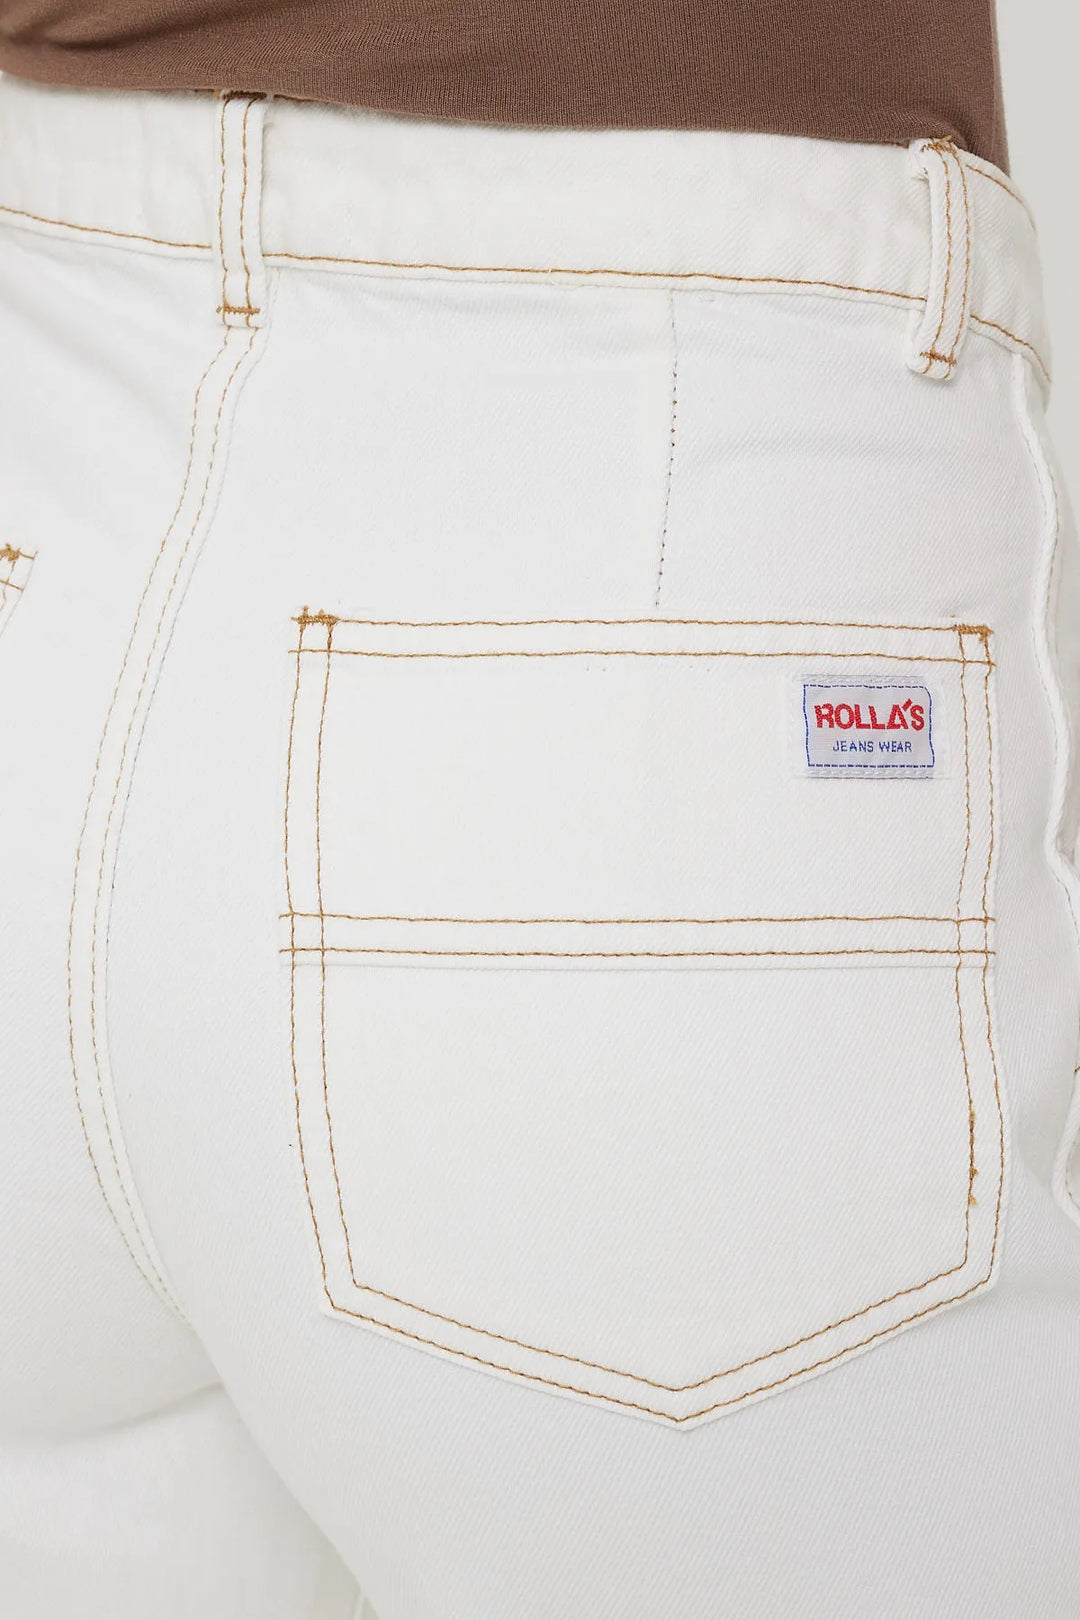 Rolla's Heidi Jean - Trade 80s White